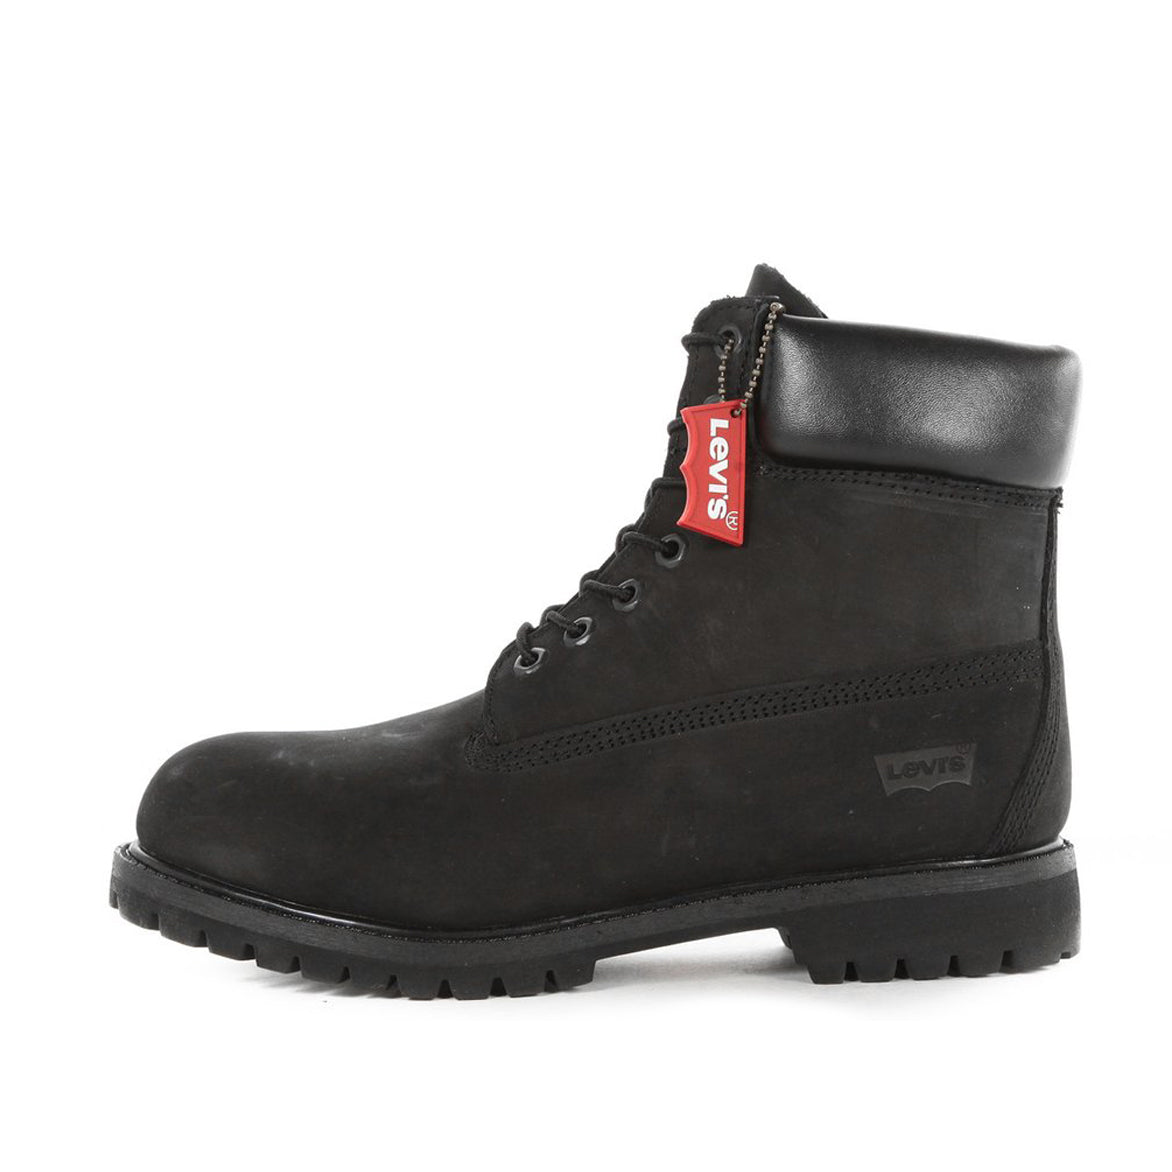 black levi boots cheap online